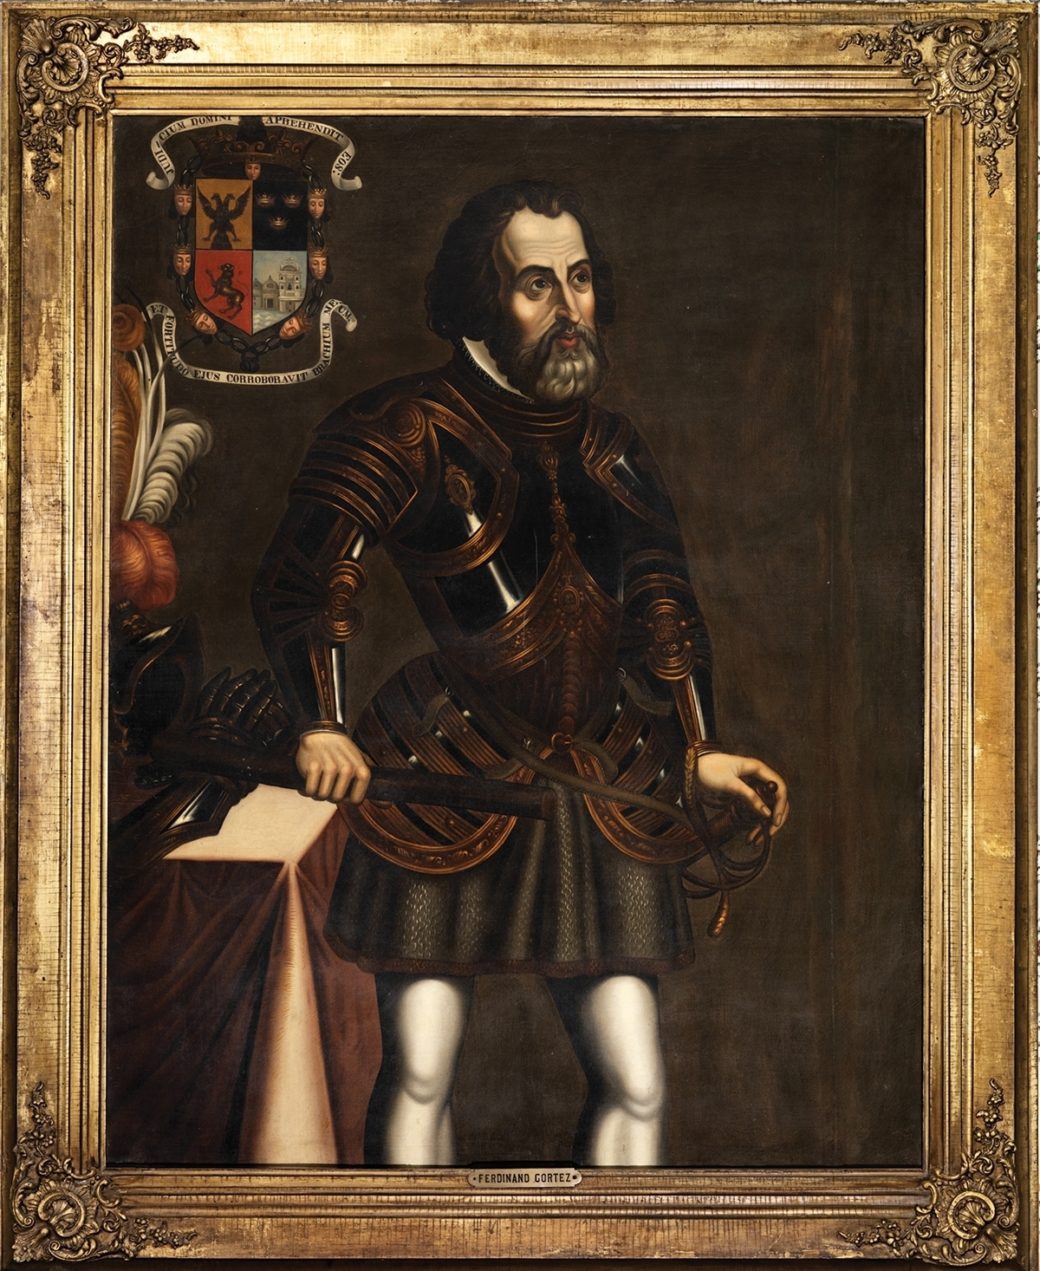 Retrato de Cortés perteneciente al presidente Polk